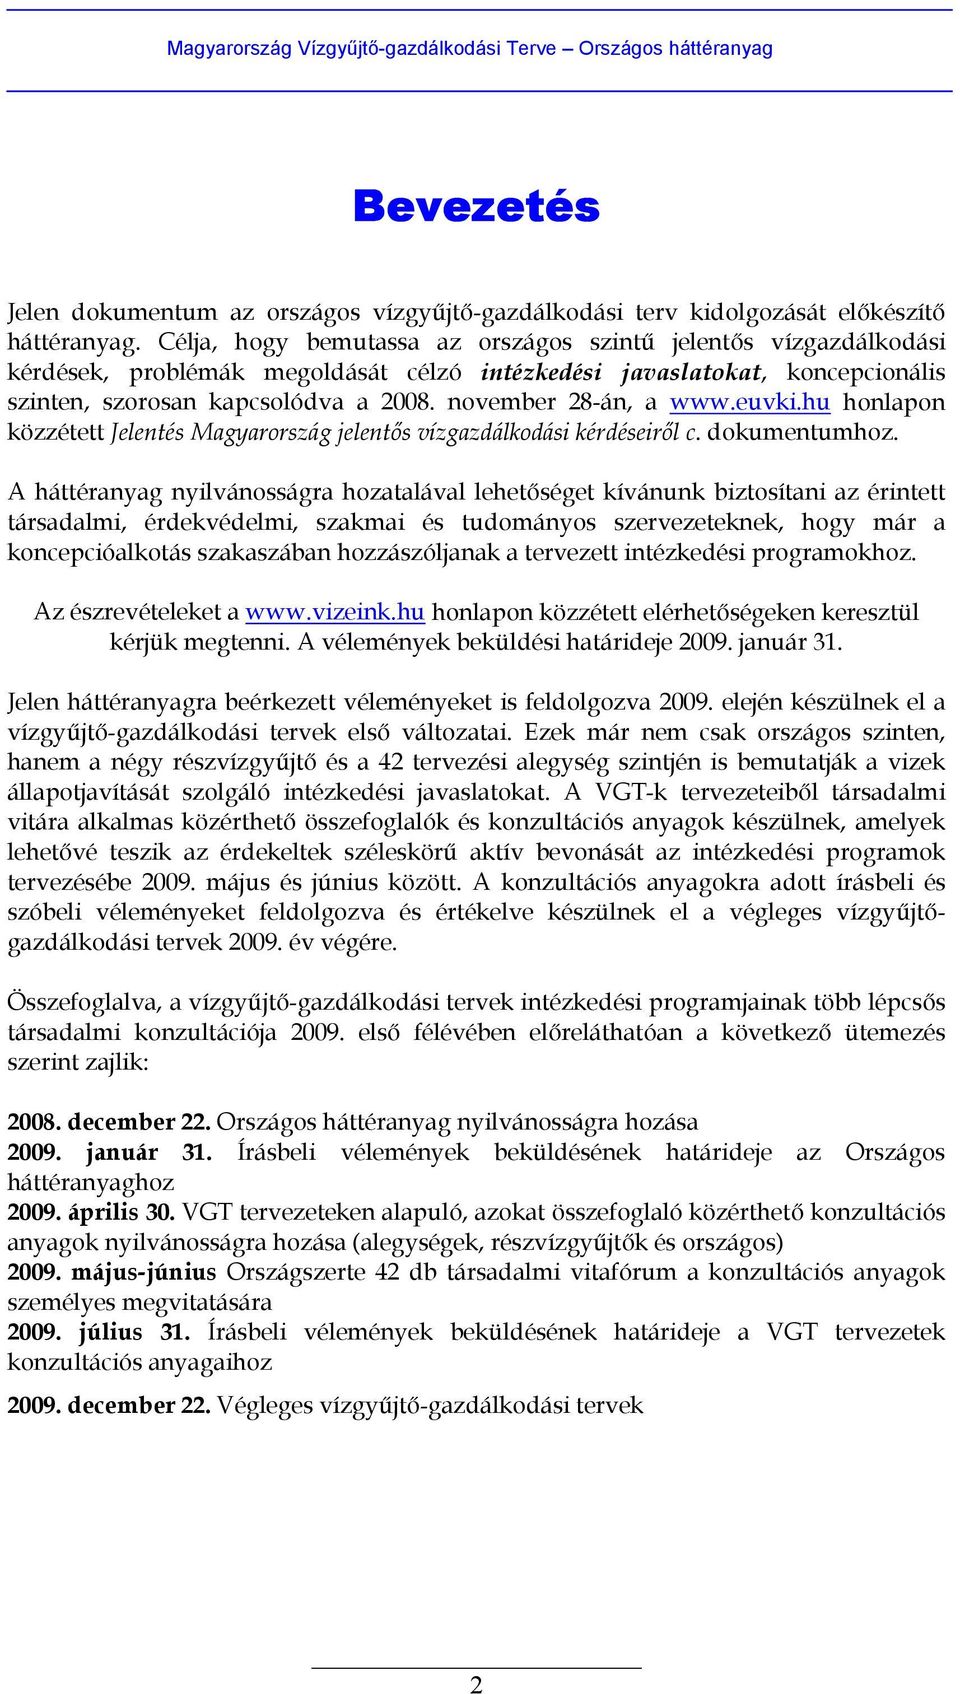 november 28-án, a www.euvki.hu honlapon közzétett Jelentés Magyarország jelentős vízgazdálkodási kérdéseiről c. dokumentumhoz.